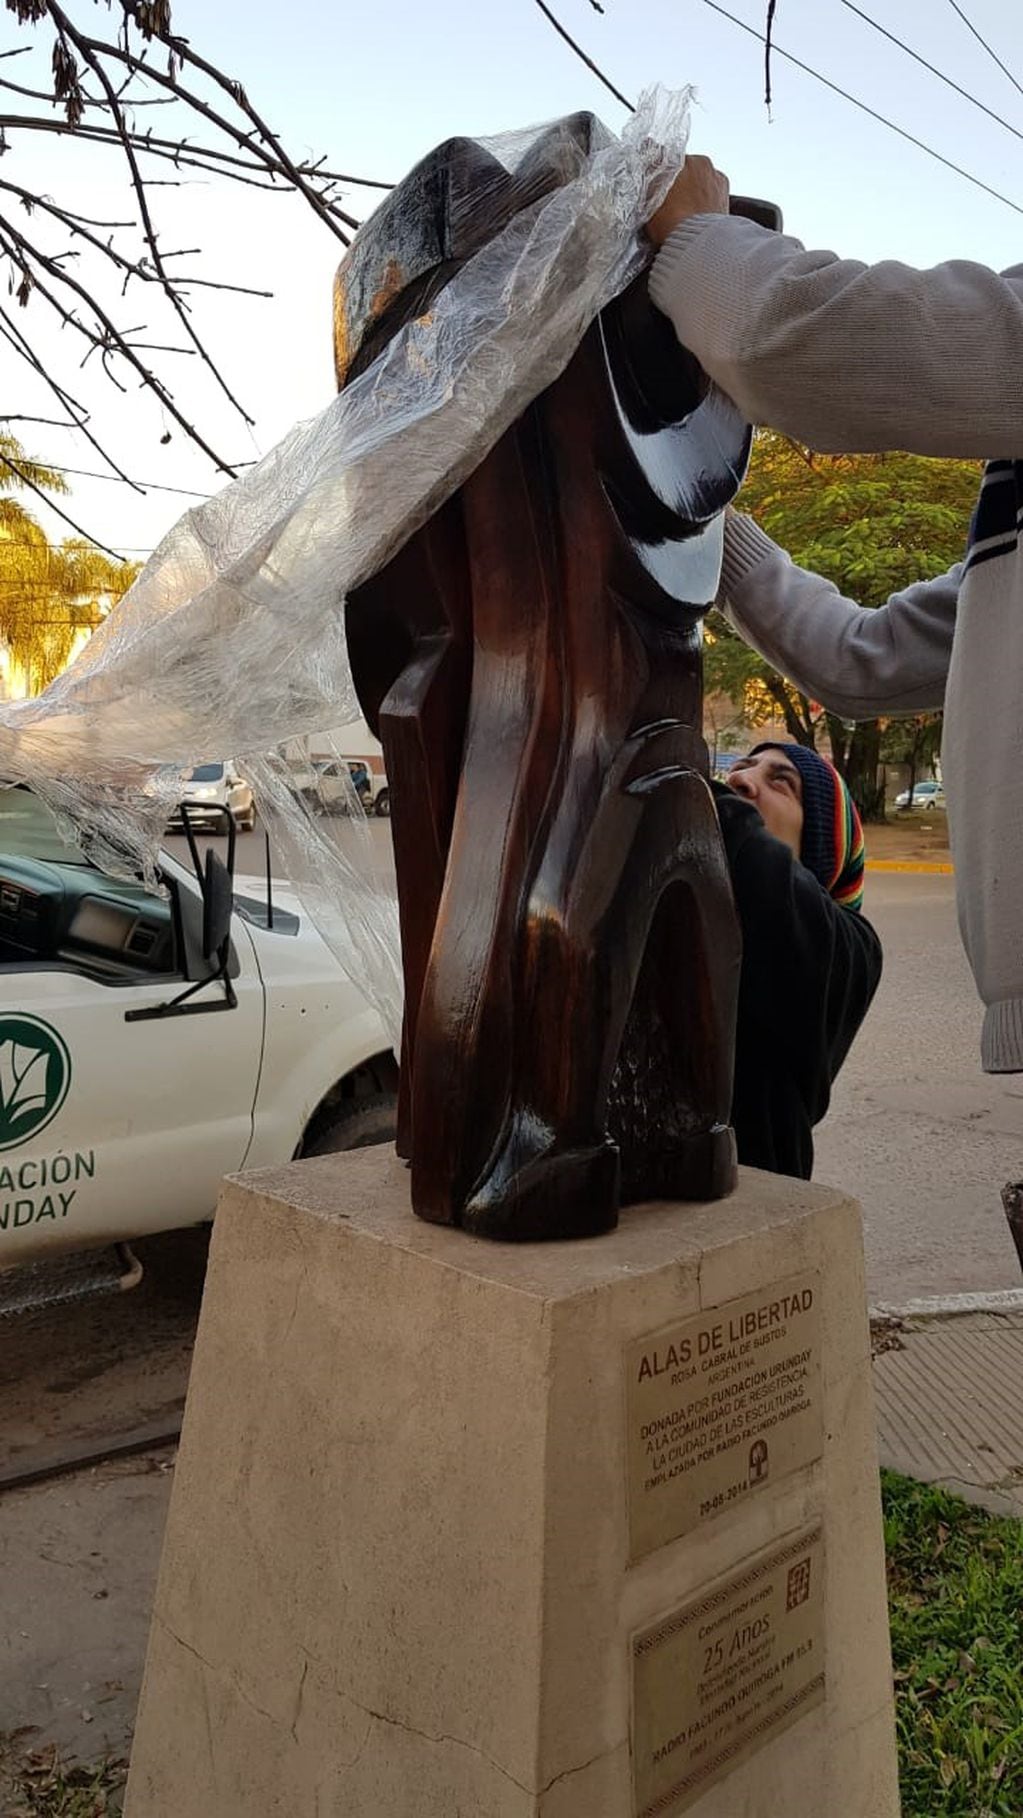 La escultura "Alas de Libertad" restaurada gracias a los miembros de la Fundación Urunday (Vía Resistencia).